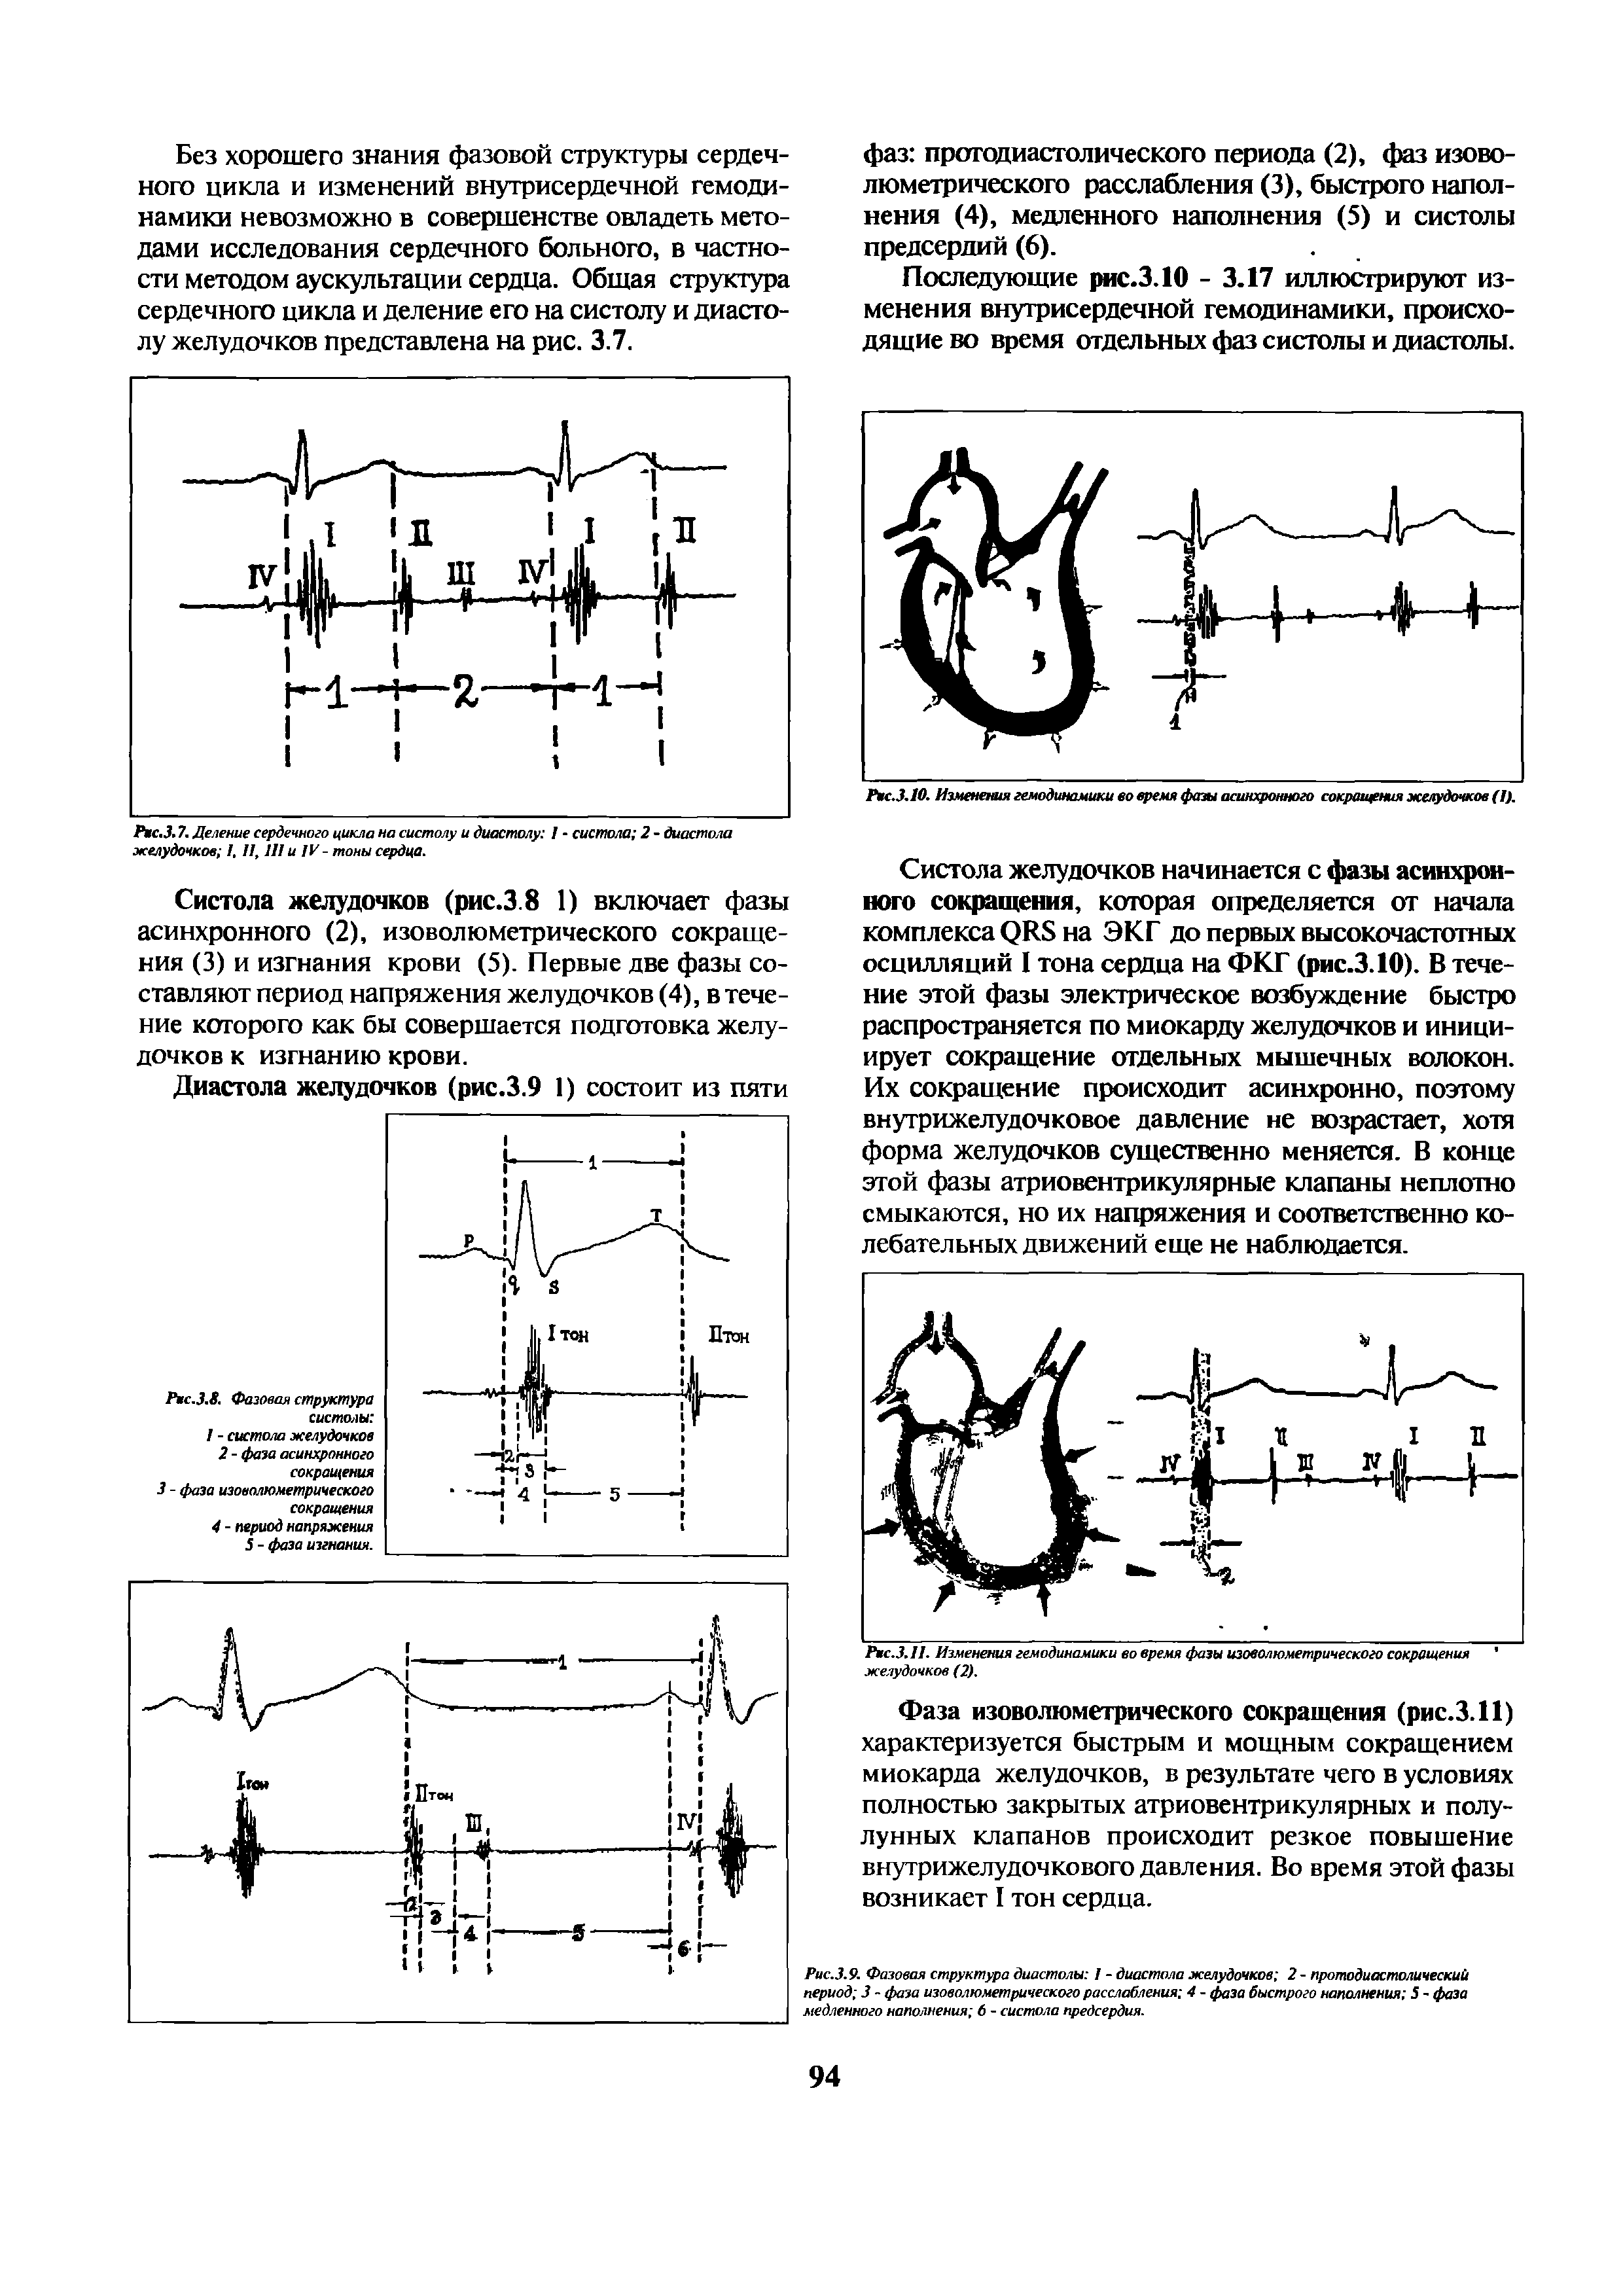 Рис.3.10. Изменами гемодинамики во время фазы асинхронного сокращения желудочков (I).